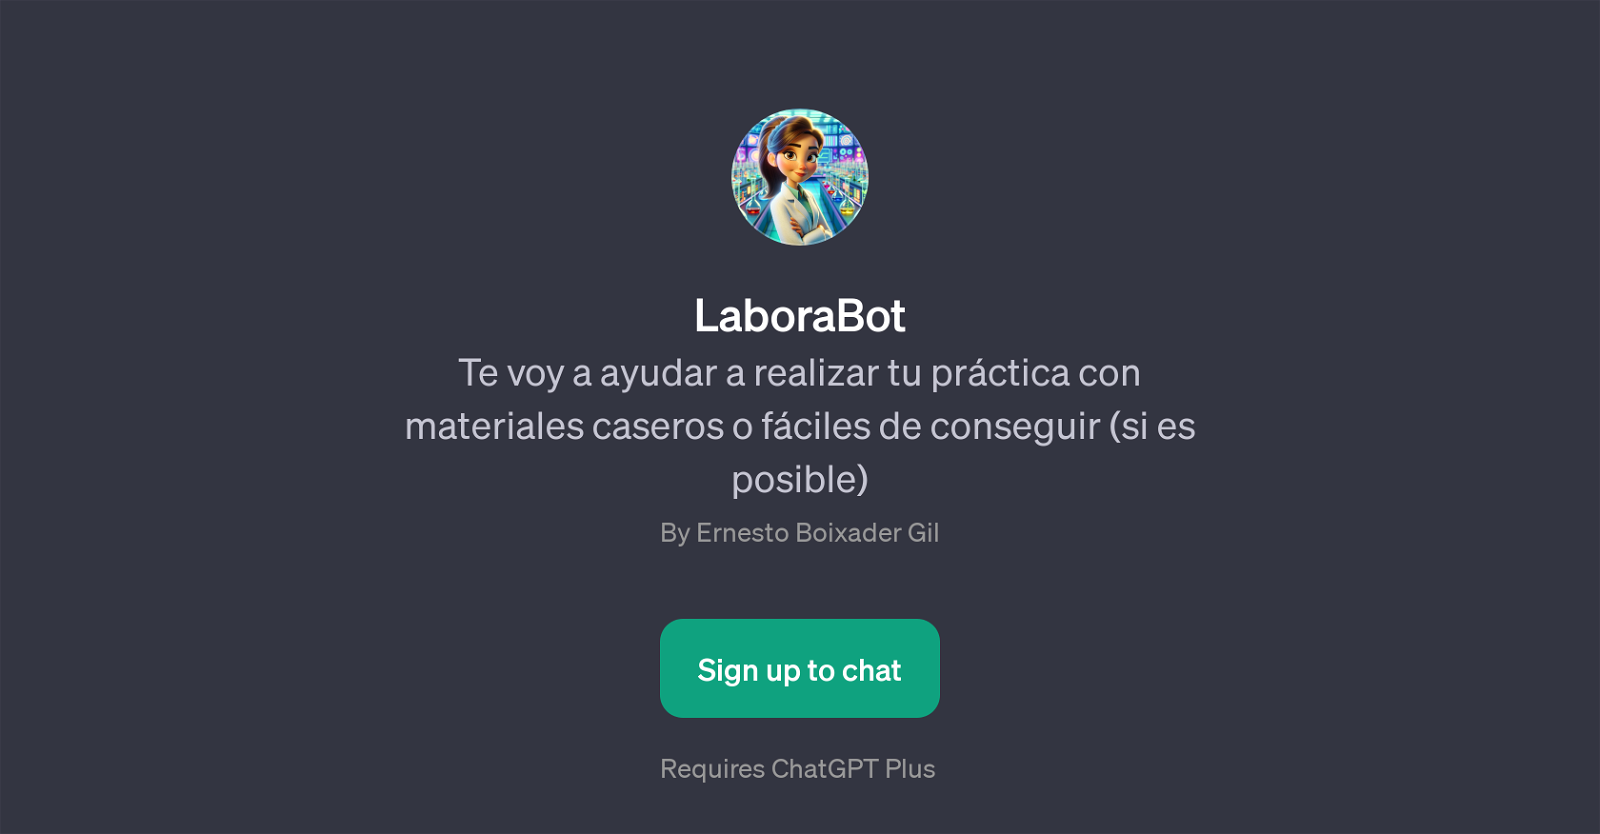 LaboraBot website